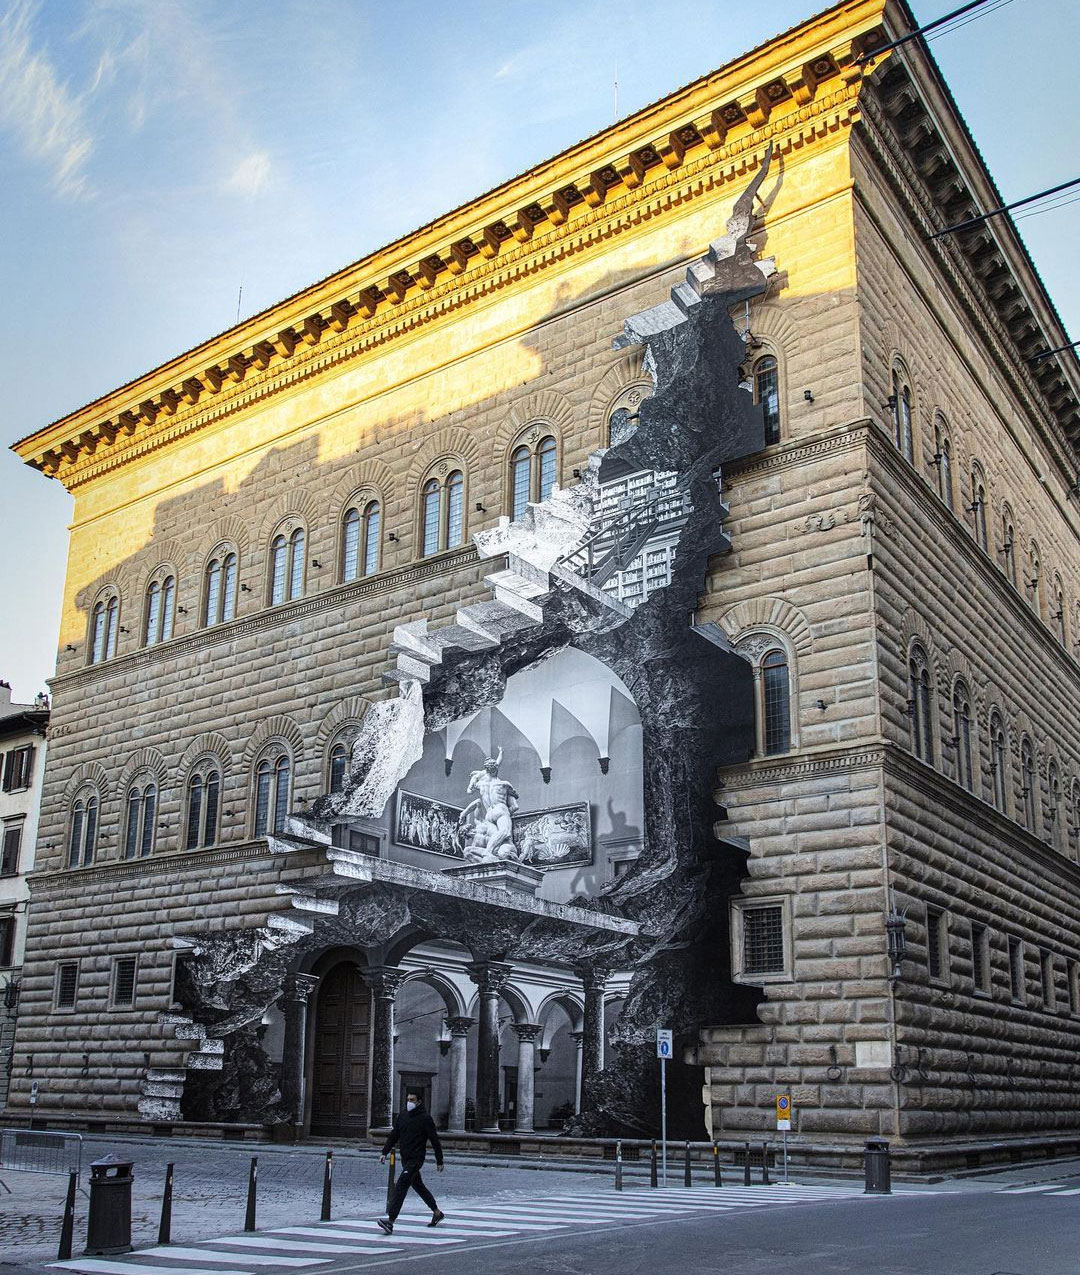 Художник JR «заново открыл» музей Флоренции
Разместив на фасаде фотоколлаж его интерьера.